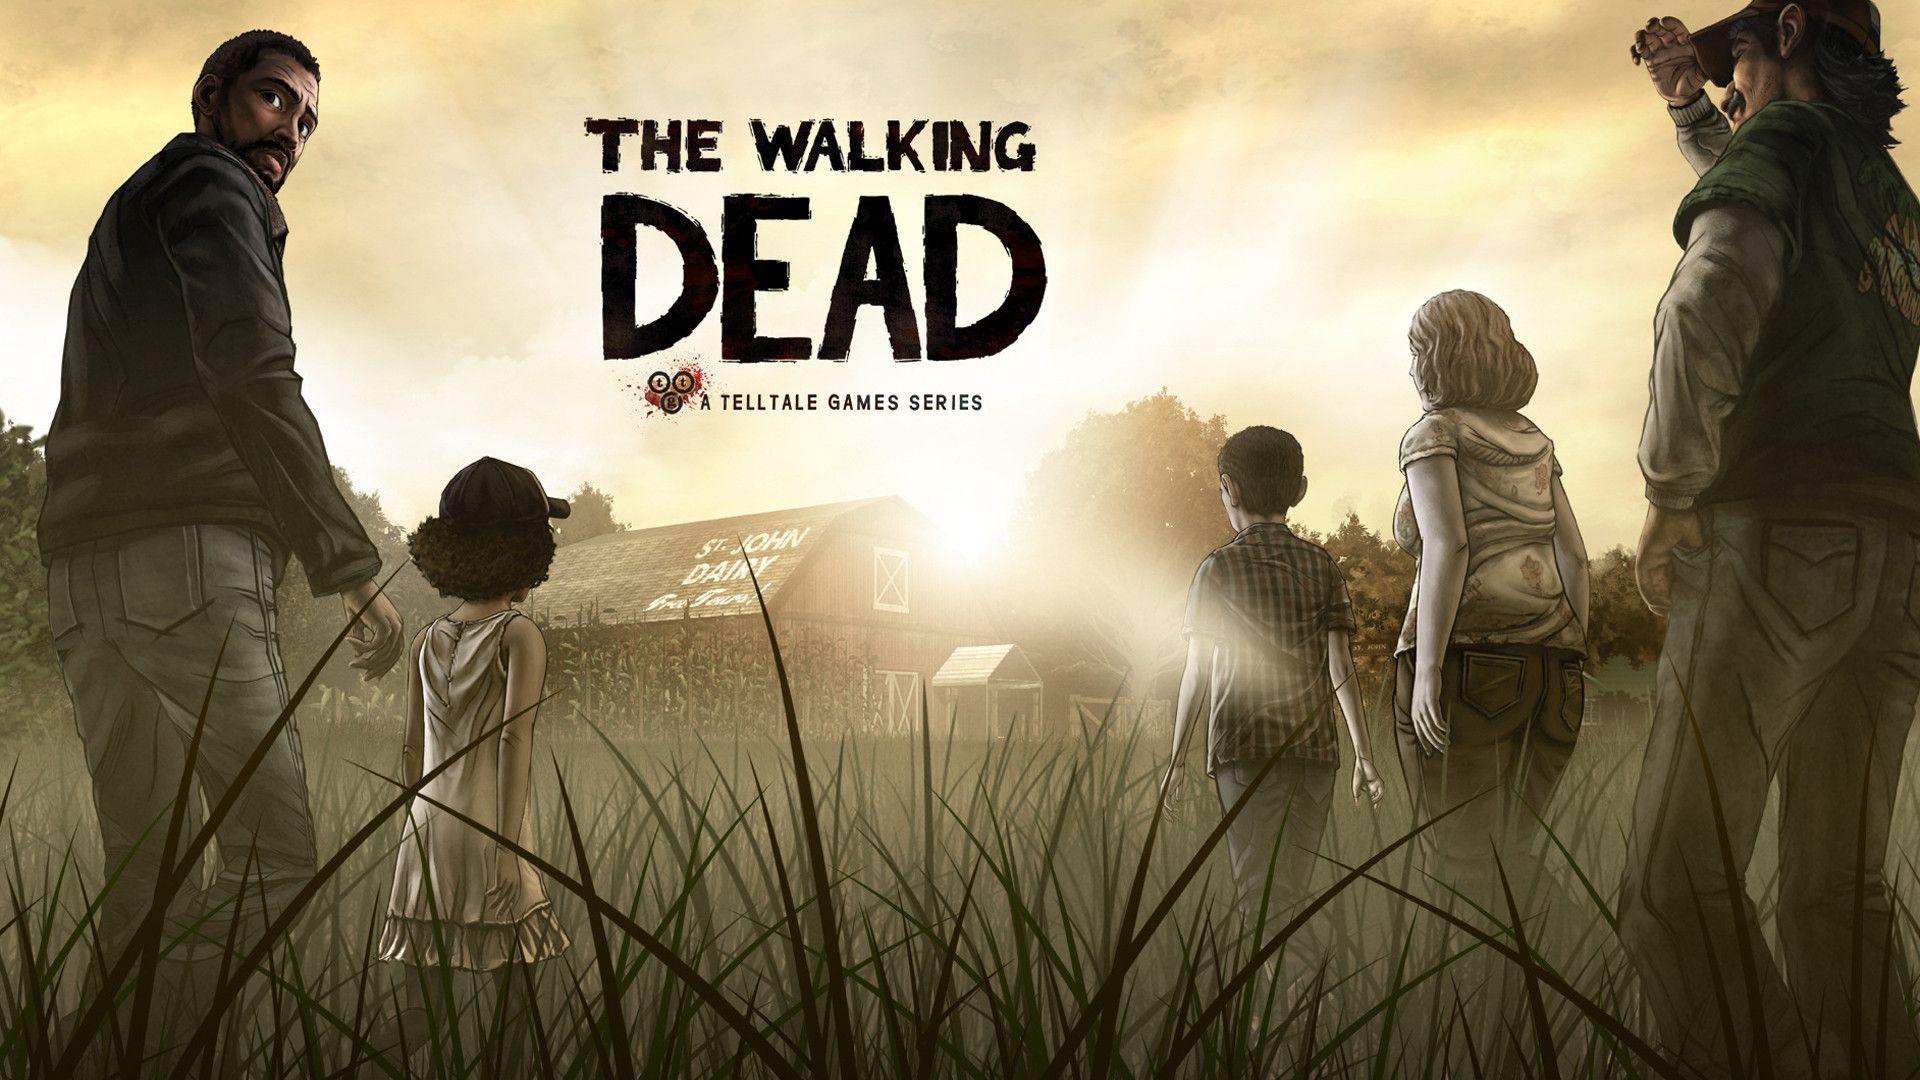 The Walking Dead Wallpaper. The Walking Dead Background